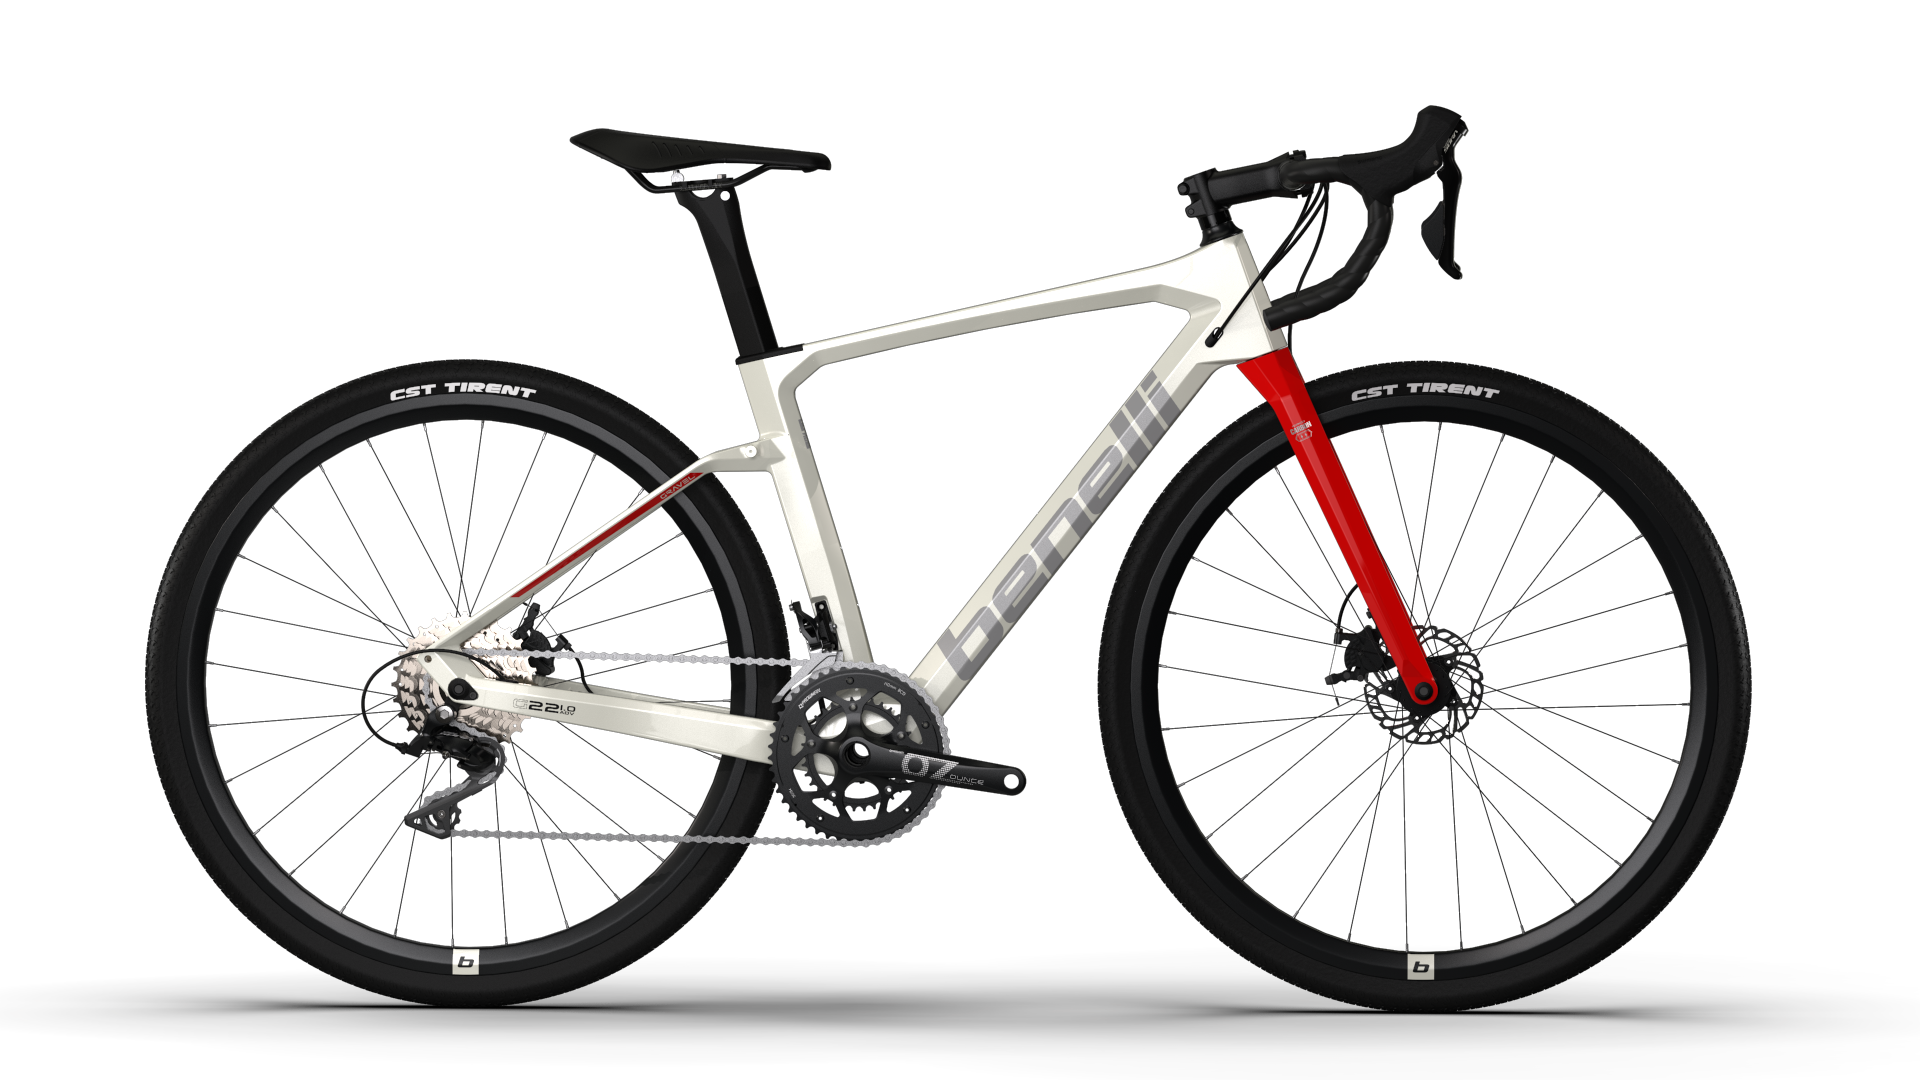 Bicicleta Gravel Benelli Carb. (G22 1.0 Adv Carb) Color Blanco/Plata Talla L